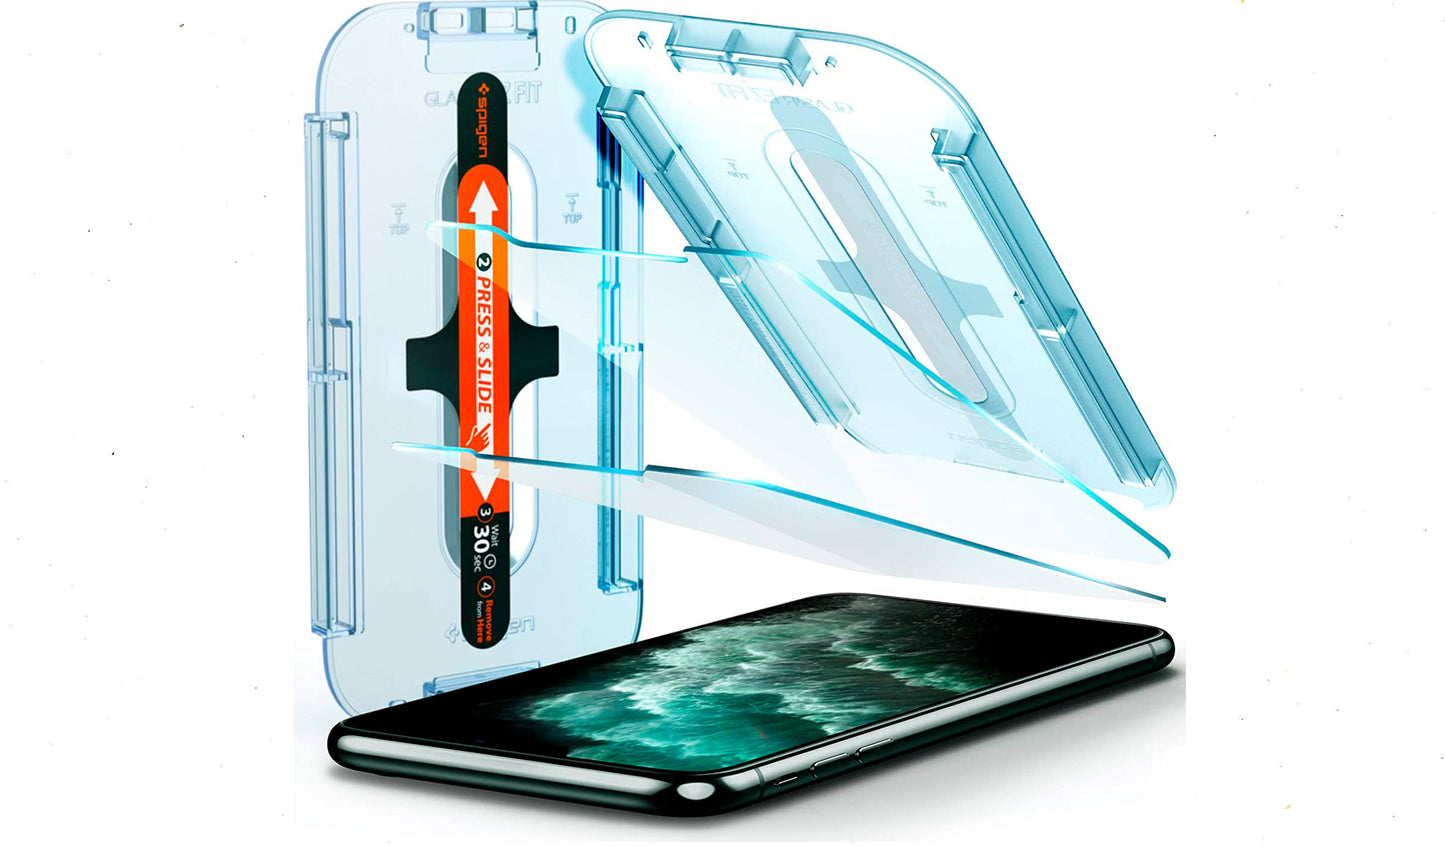 Vidrio temperado Spigen para iPhone 11 Pro Max/XSMAX – iStore Costa Rica